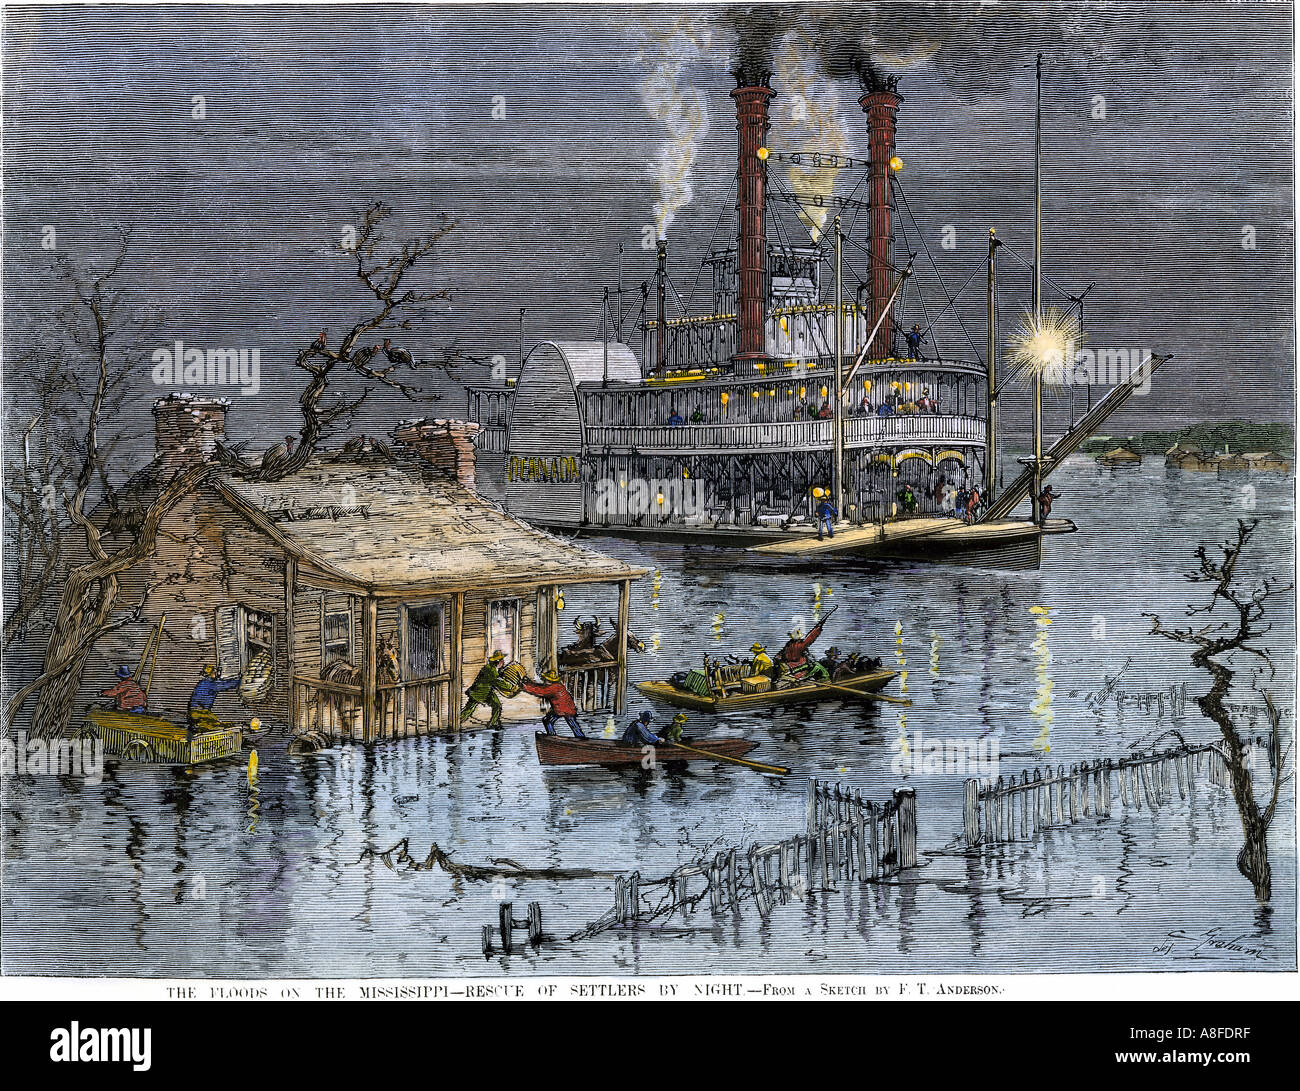 Sauvé par la famille riverboat la nuit des inondations sur la rivière Mississippi, 1882. À la main, gravure sur bois Banque D'Images